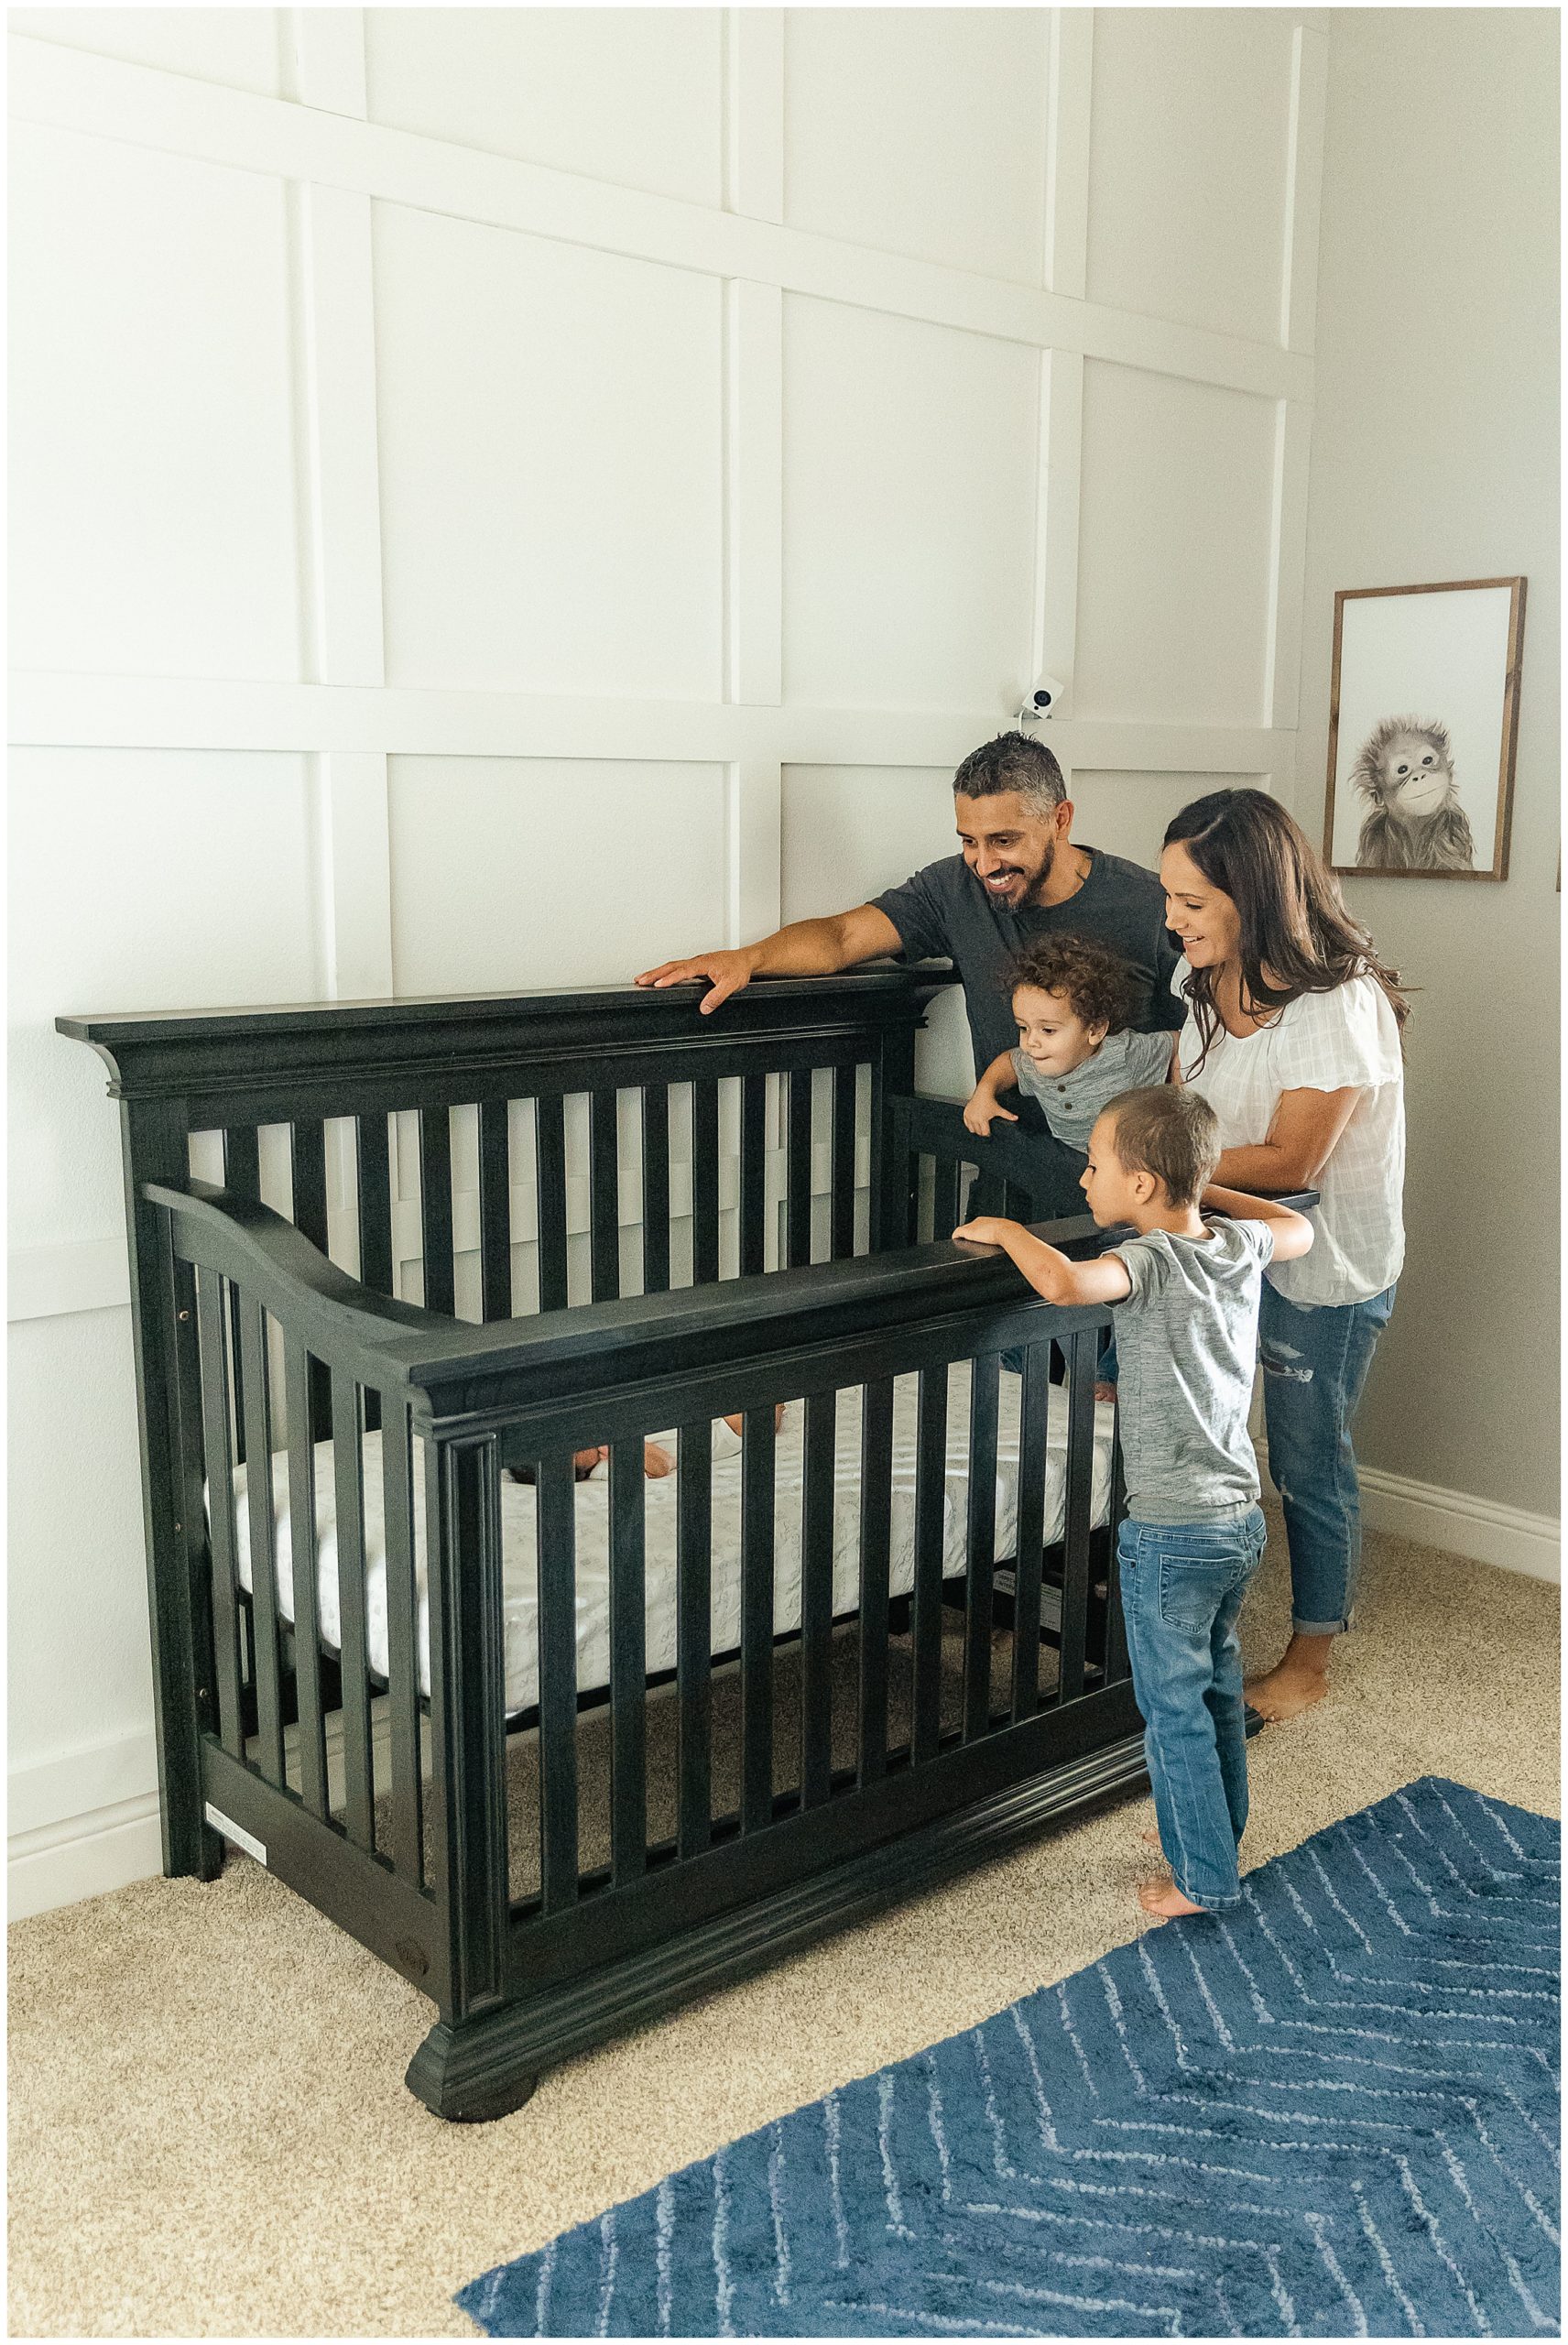 Family Surrounding Newborn Baby in Crib | Natalie + Eddie